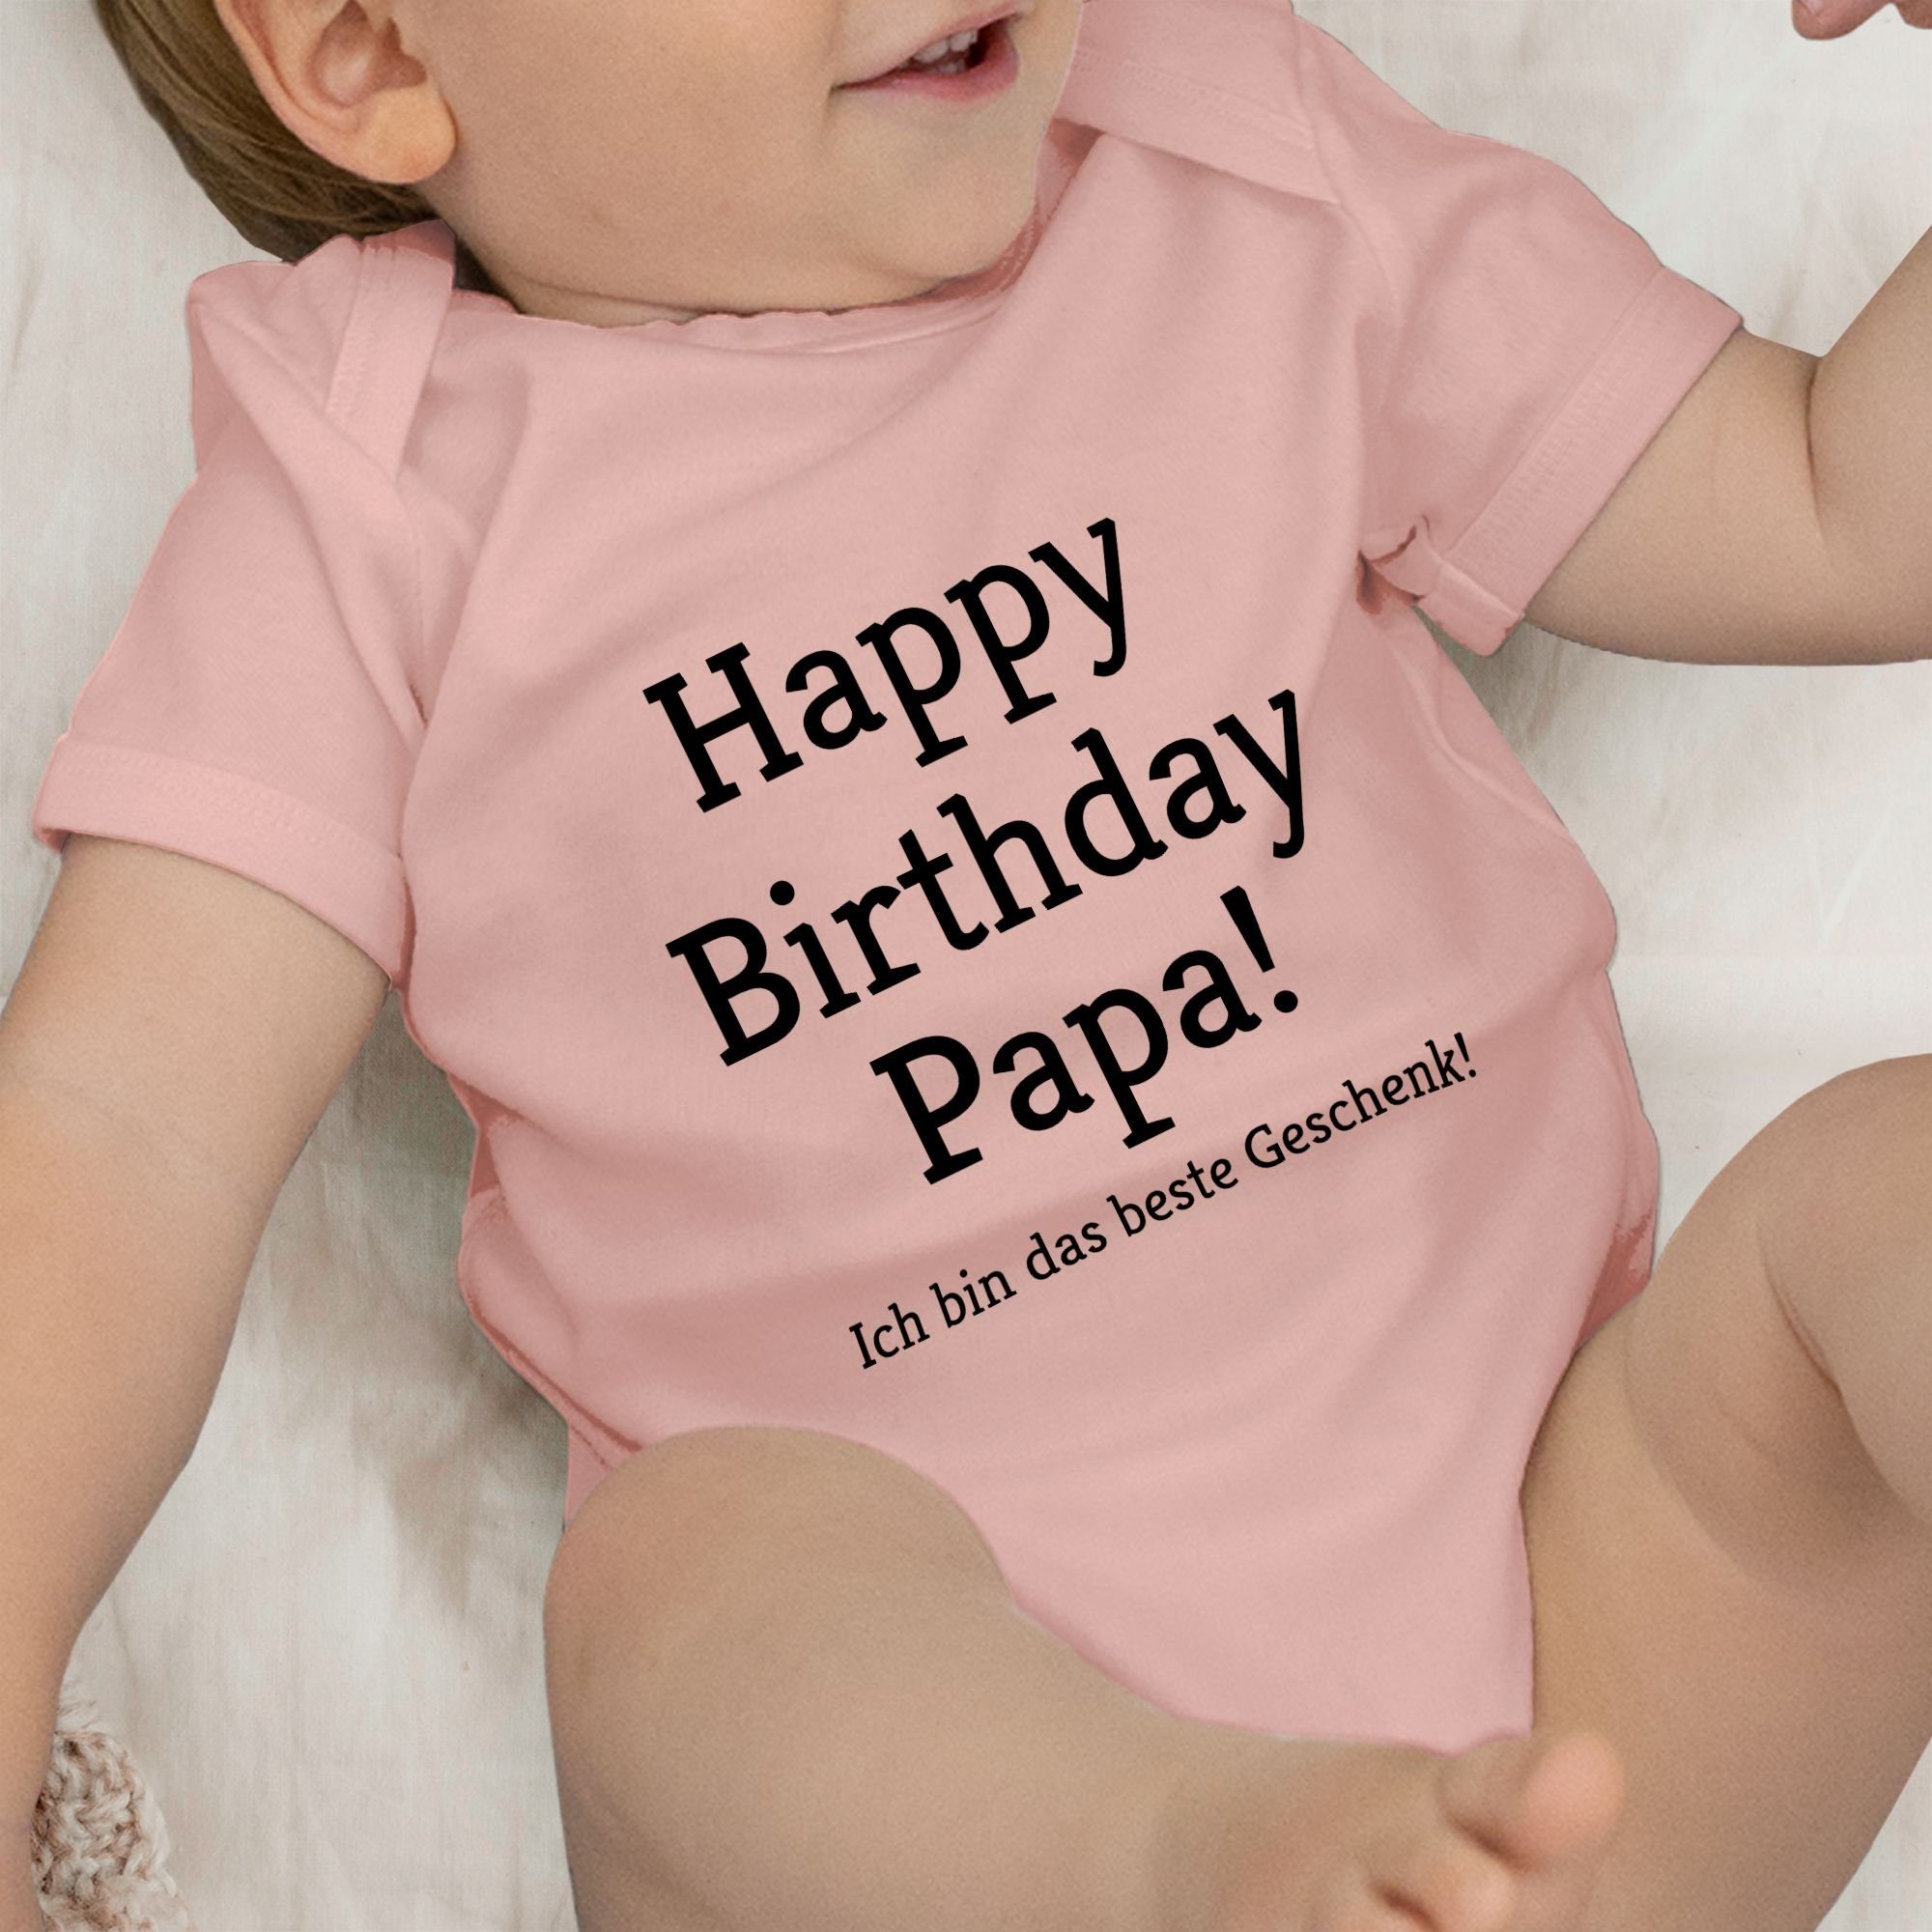 Babyrosa Event Happy Baby Geschenke Ich Geschenk! Shirtbody Papa! 1 Birthday Shirtracer das bin